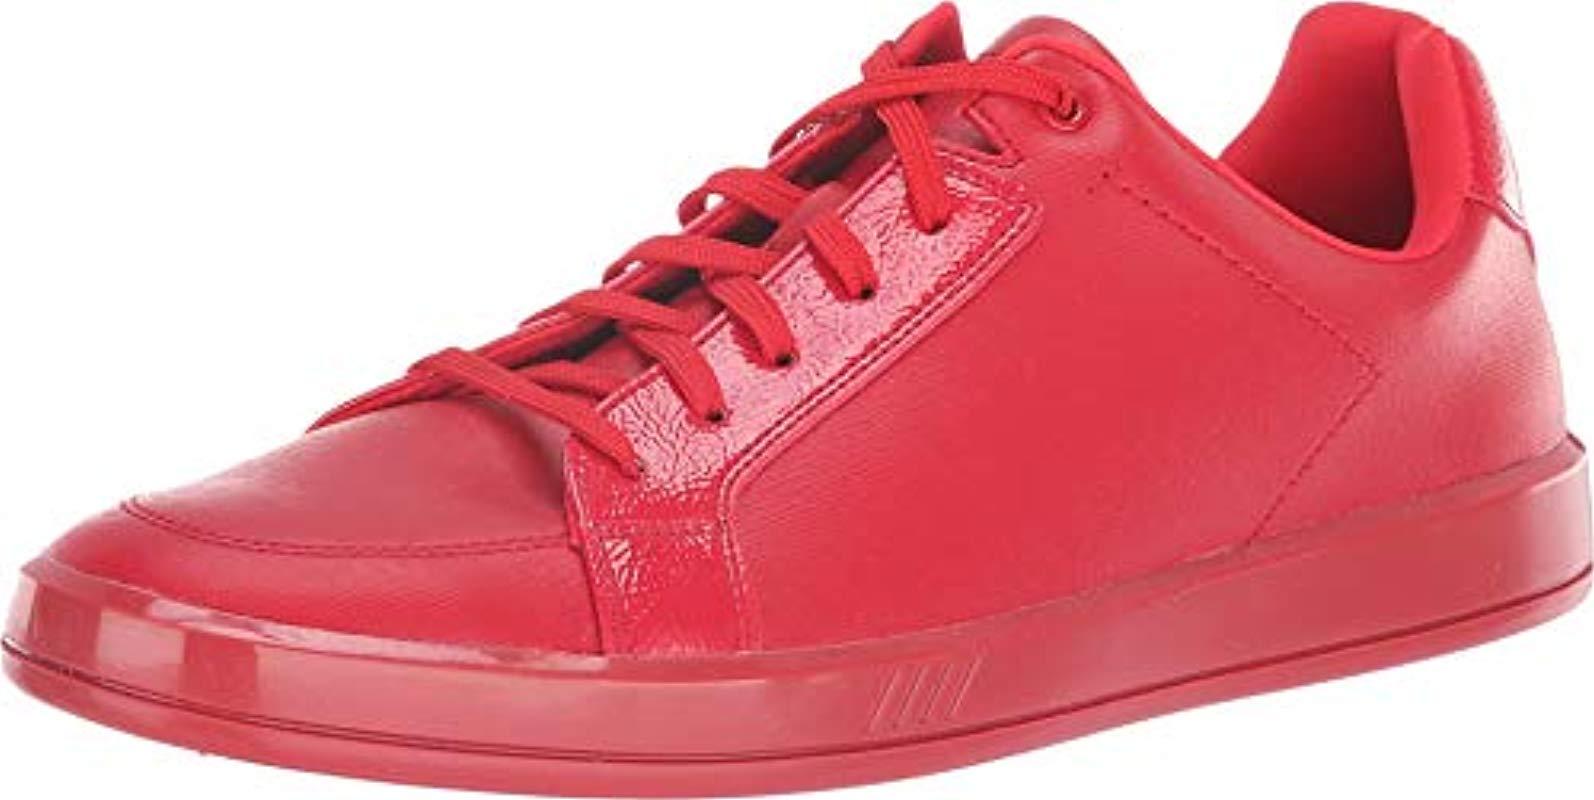 ALDO Wadowet Sneaker in Red for Men - Lyst